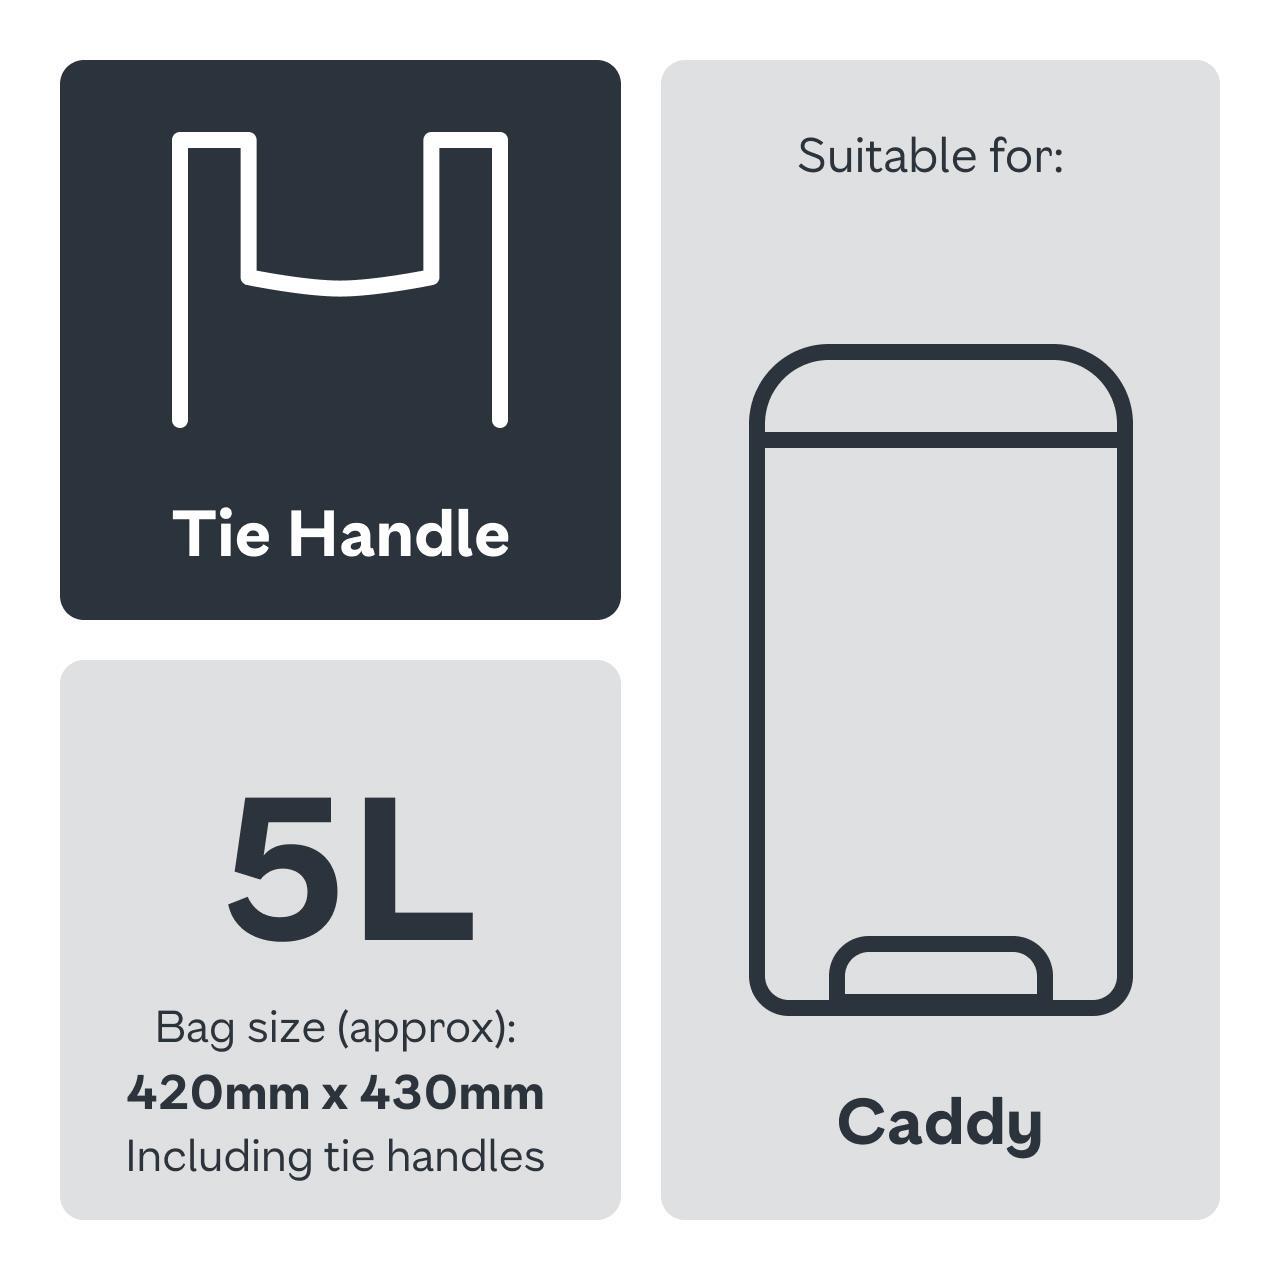 Ocado Compostable Caddy Liners 5L 20 per pack